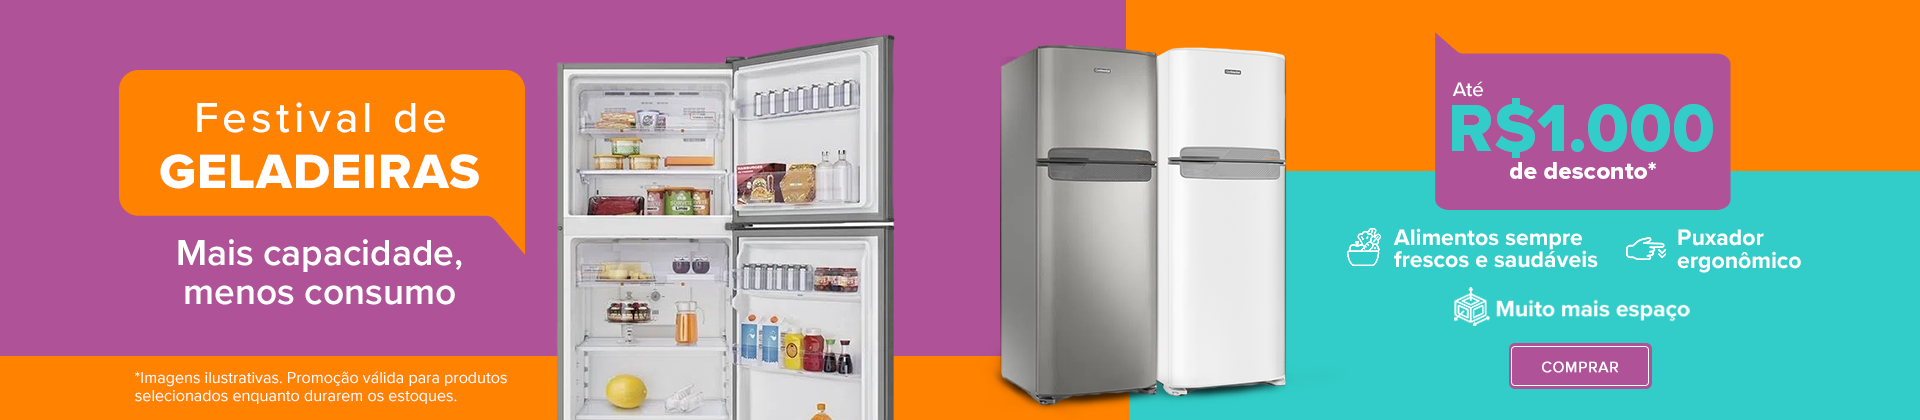 Refrigeradores com até R$1000 de desconto